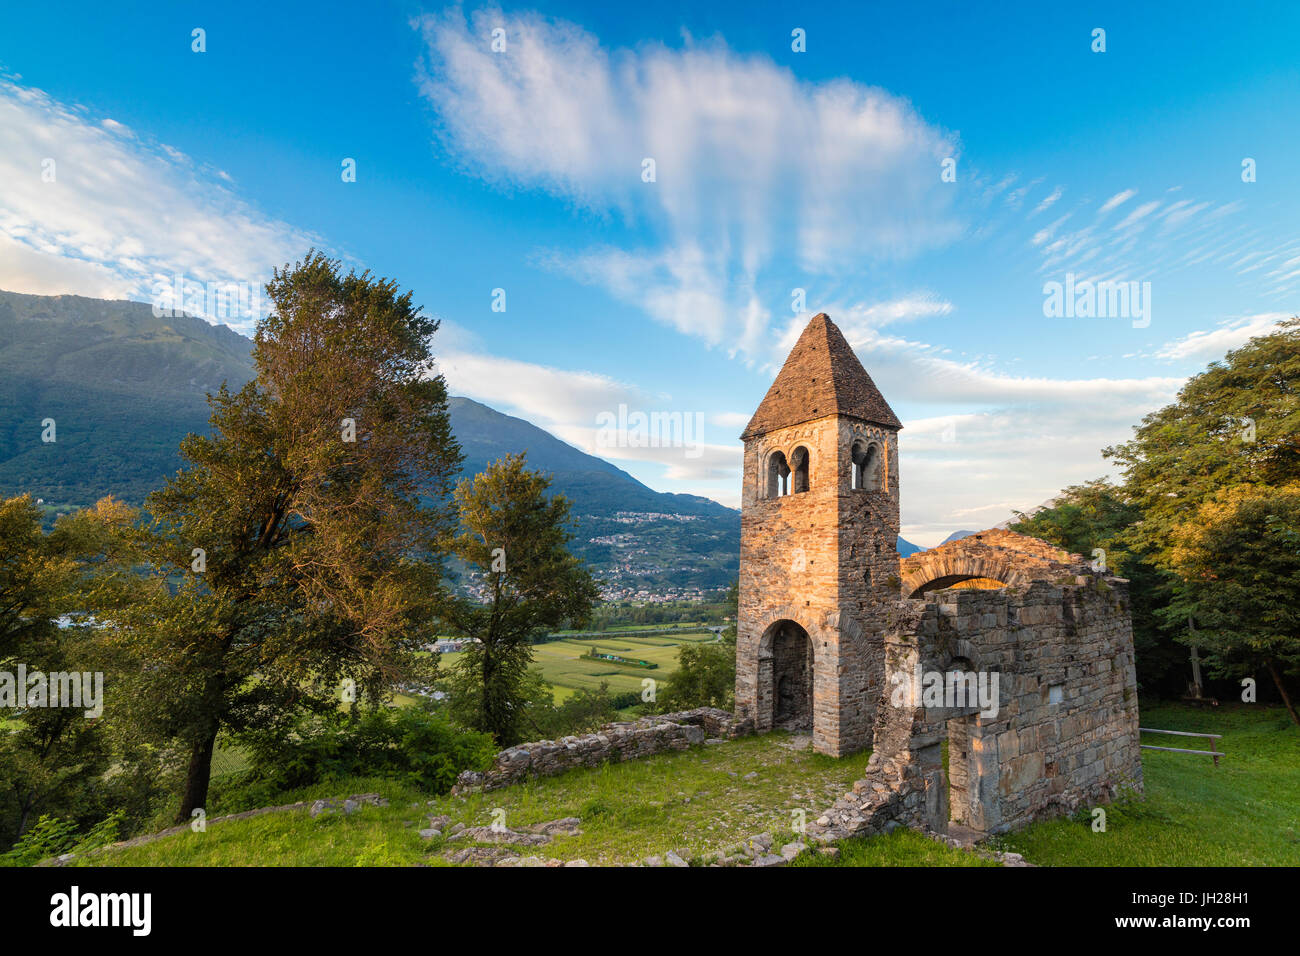 Sunset Sky fotogramas de la antigua abadía de San Pietro in Vallate, Piagno, provincia de Sondrio, Bajar Valtellina, Lombardía, Italia Foto de stock